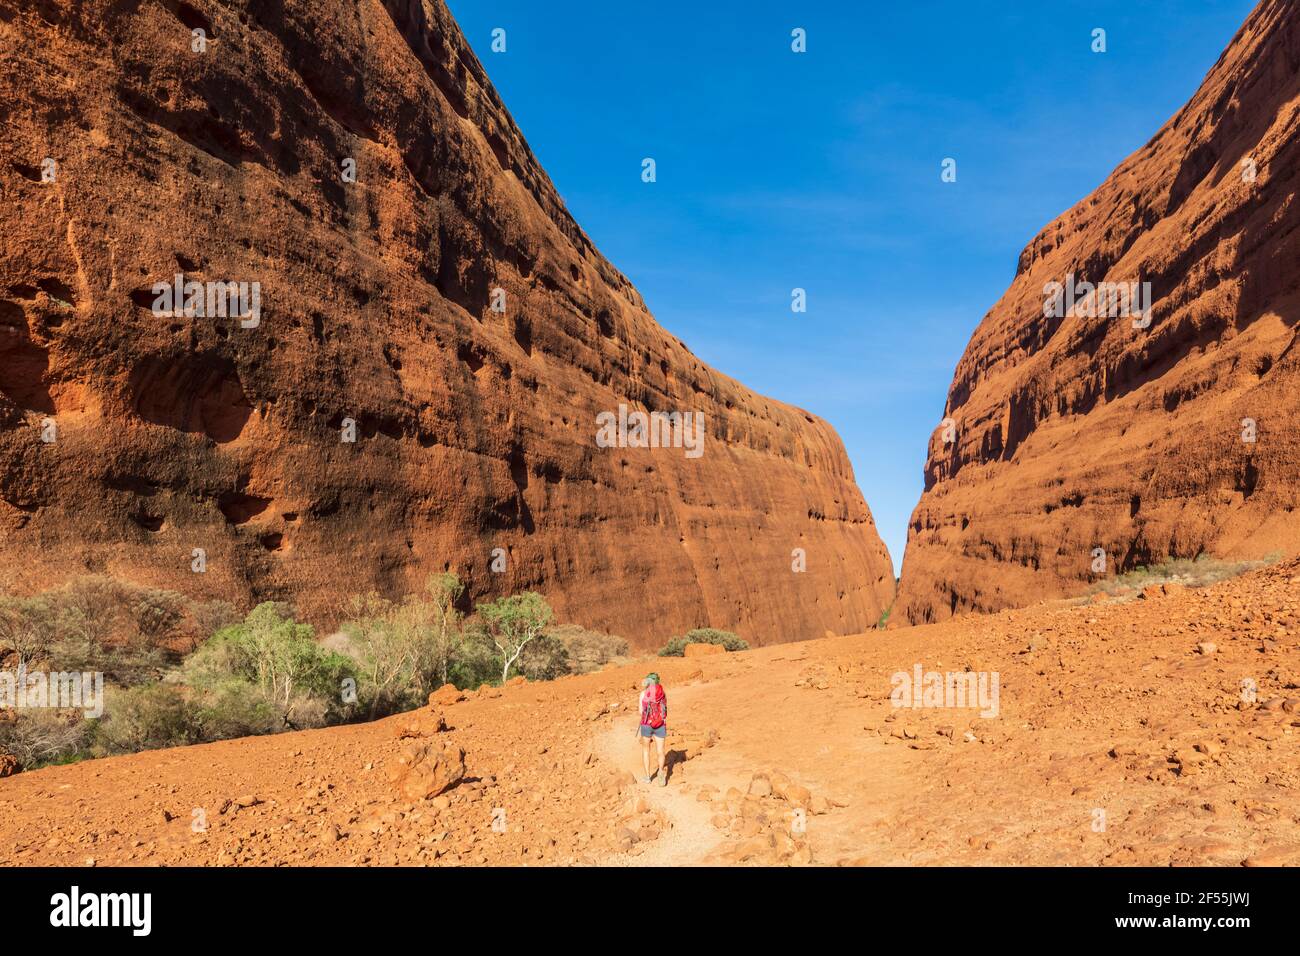 Australie, territoire du Nord, randonnée au parc national d'Uluru Kata Tjuta dans le désert central de l'Australie Banque D'Images